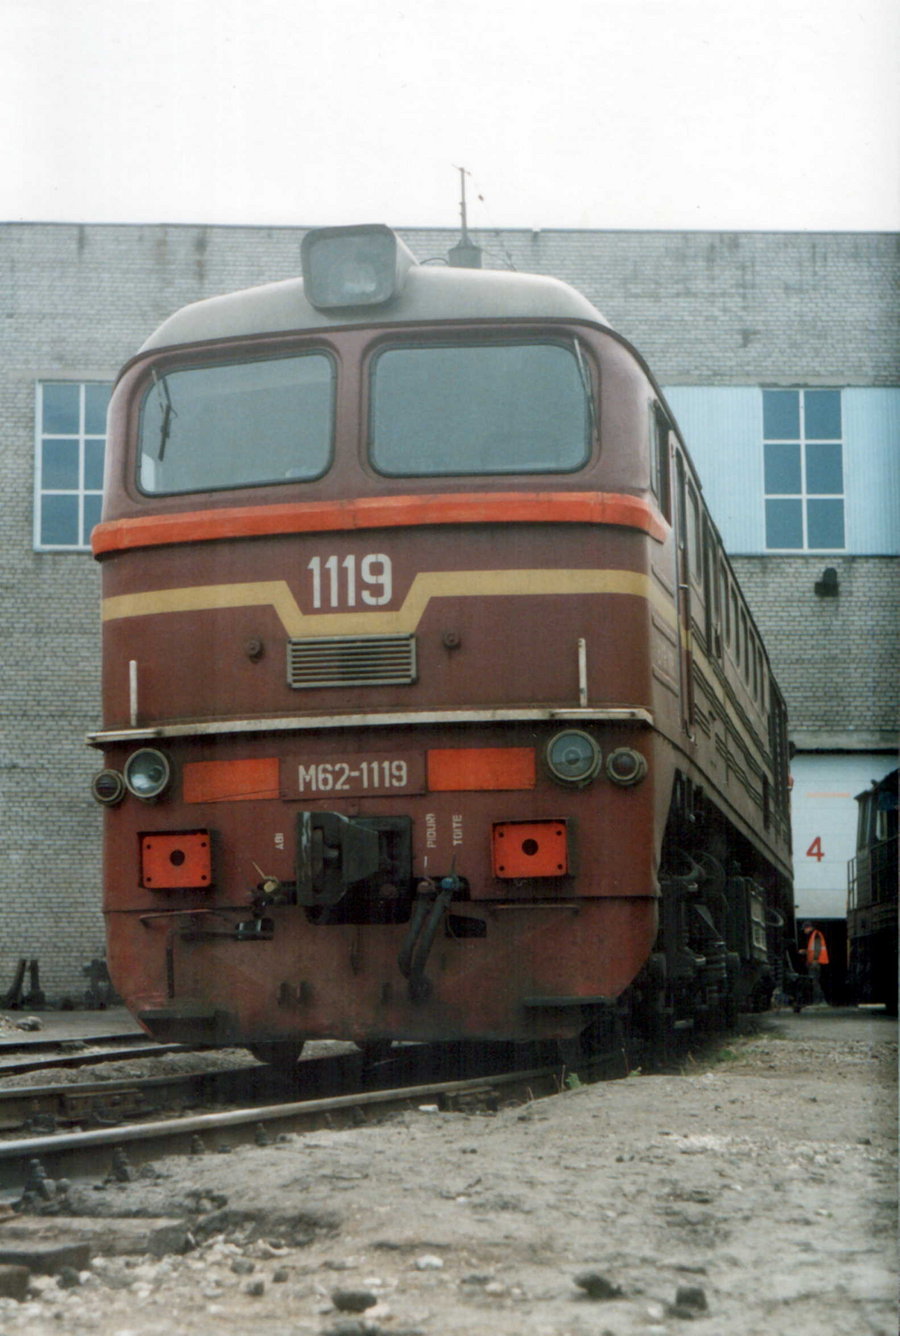 M62-1286 (EVR M62-1119)
26.05.2002
Tallinn-Kopli depot
